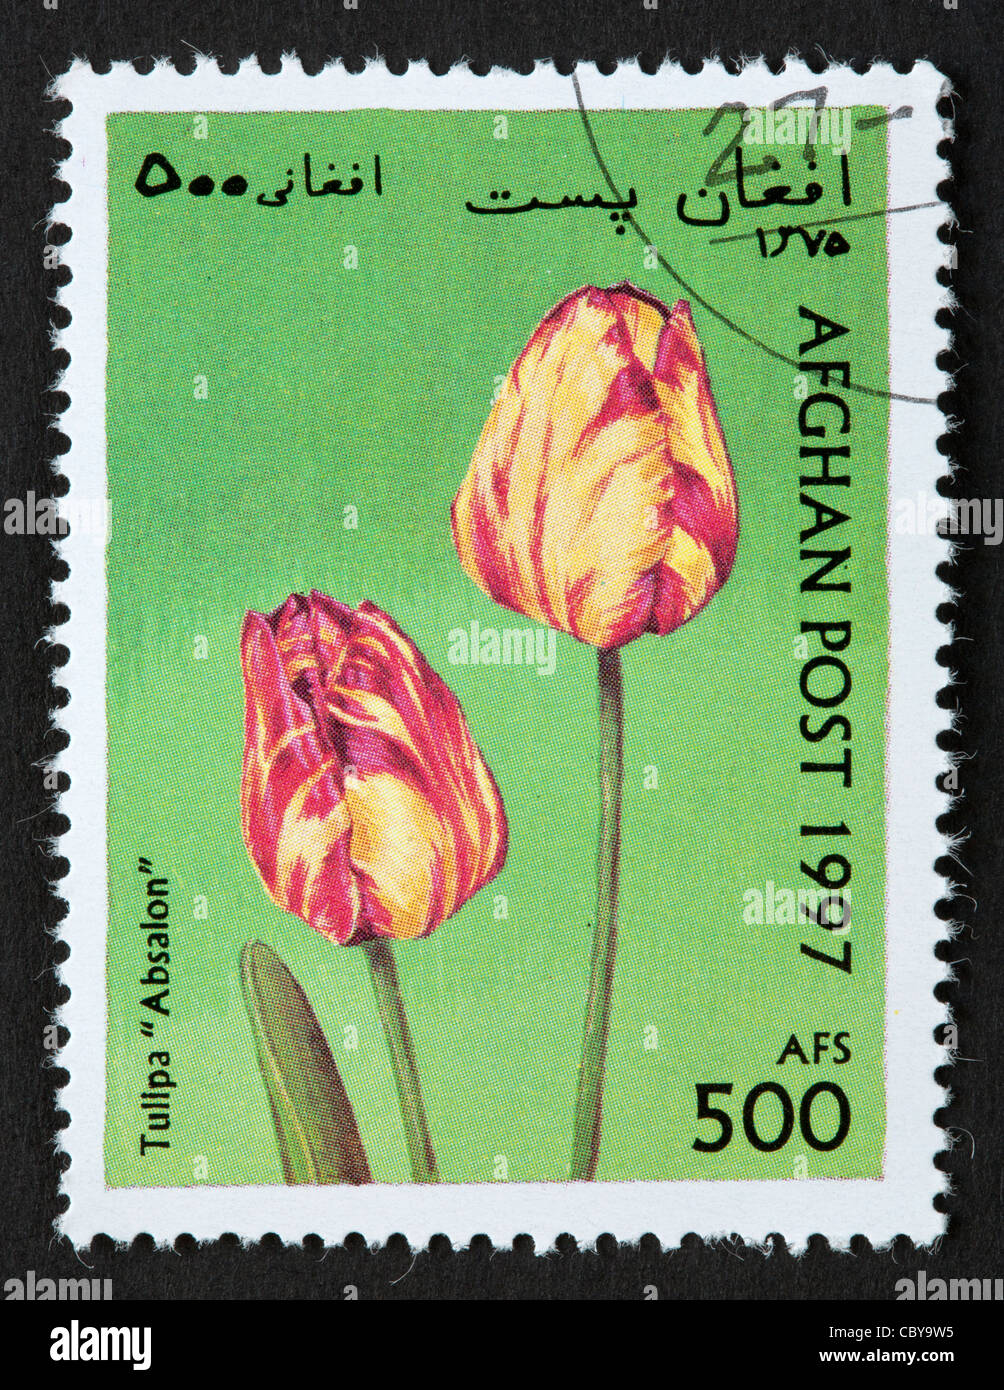 Afghanischen Briefmarke Stockfoto